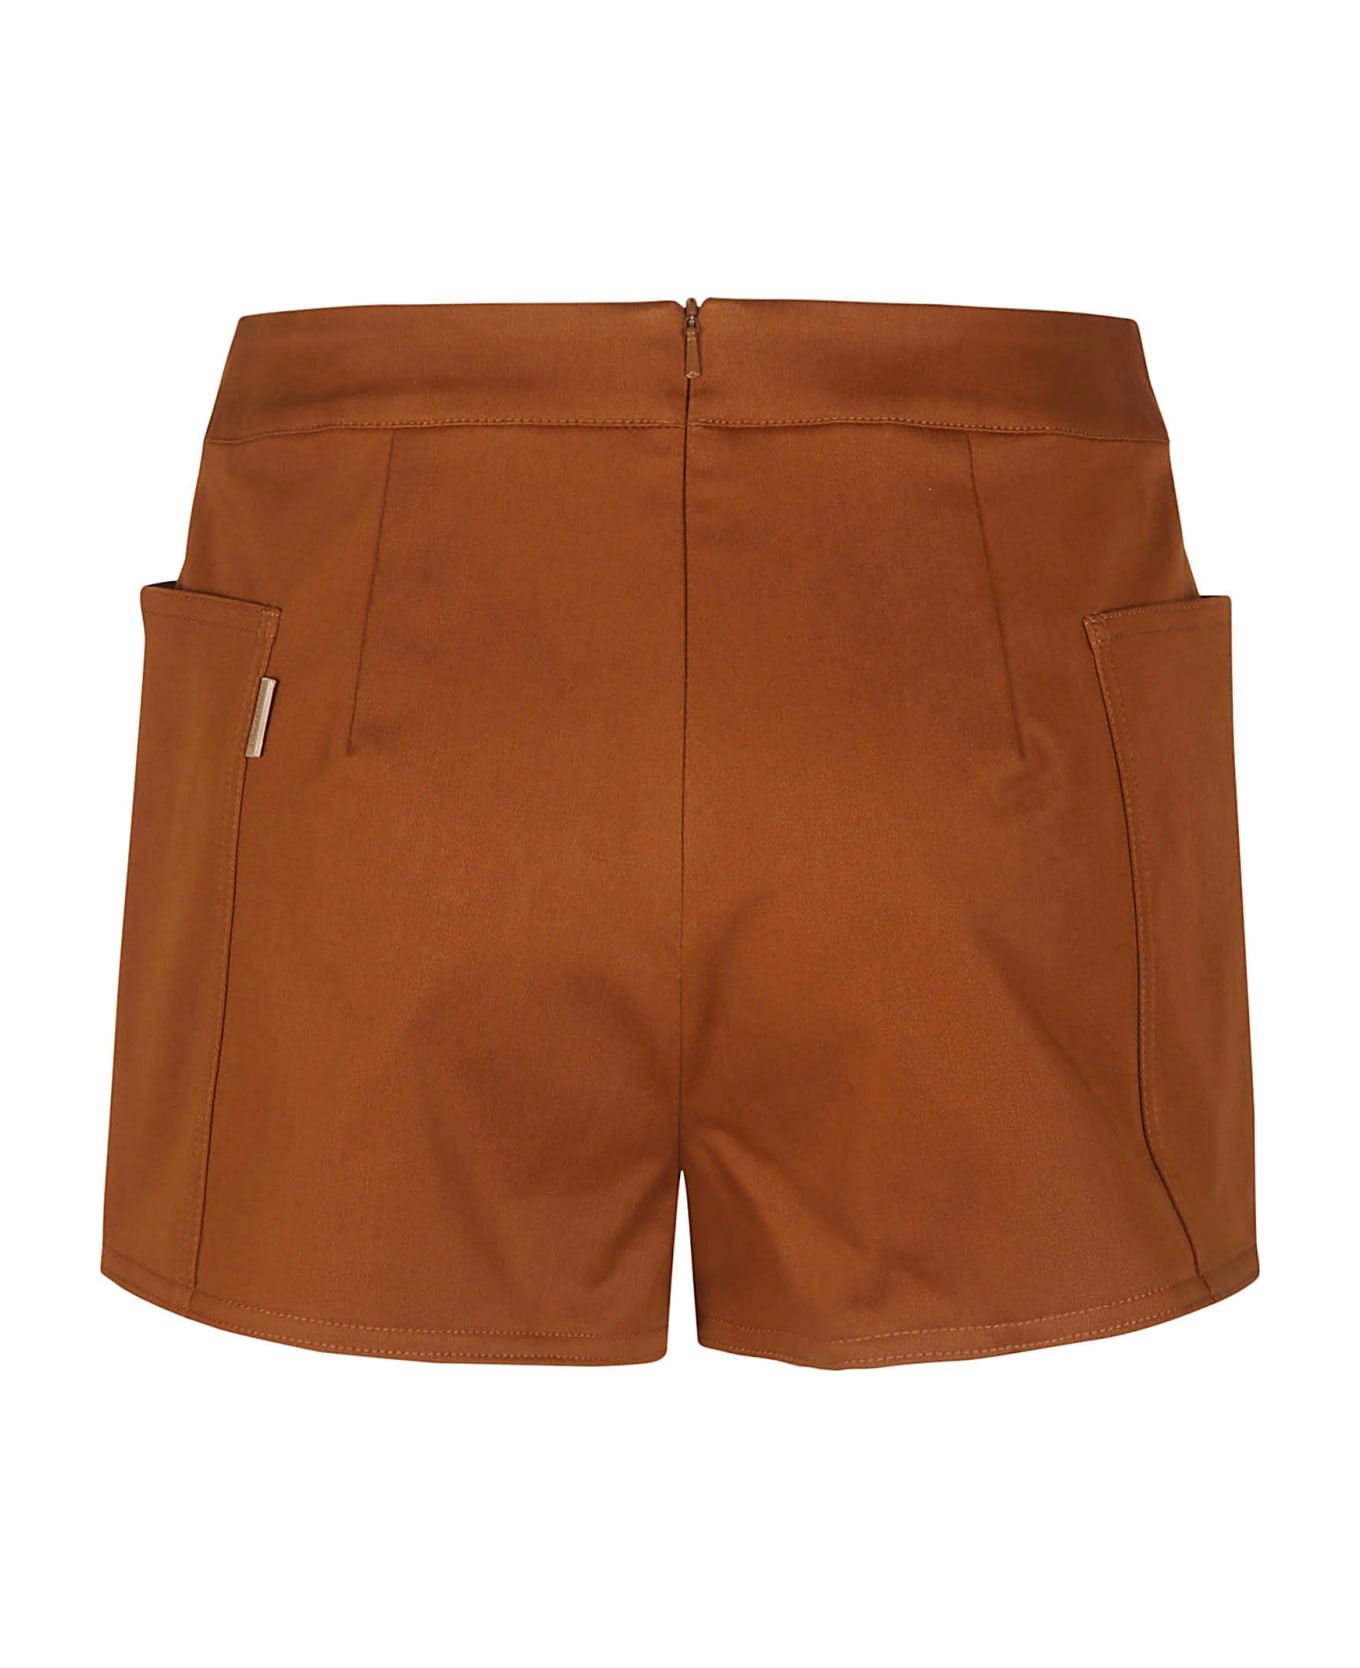 Max Mara Light Brown Riad Shorts - Brown